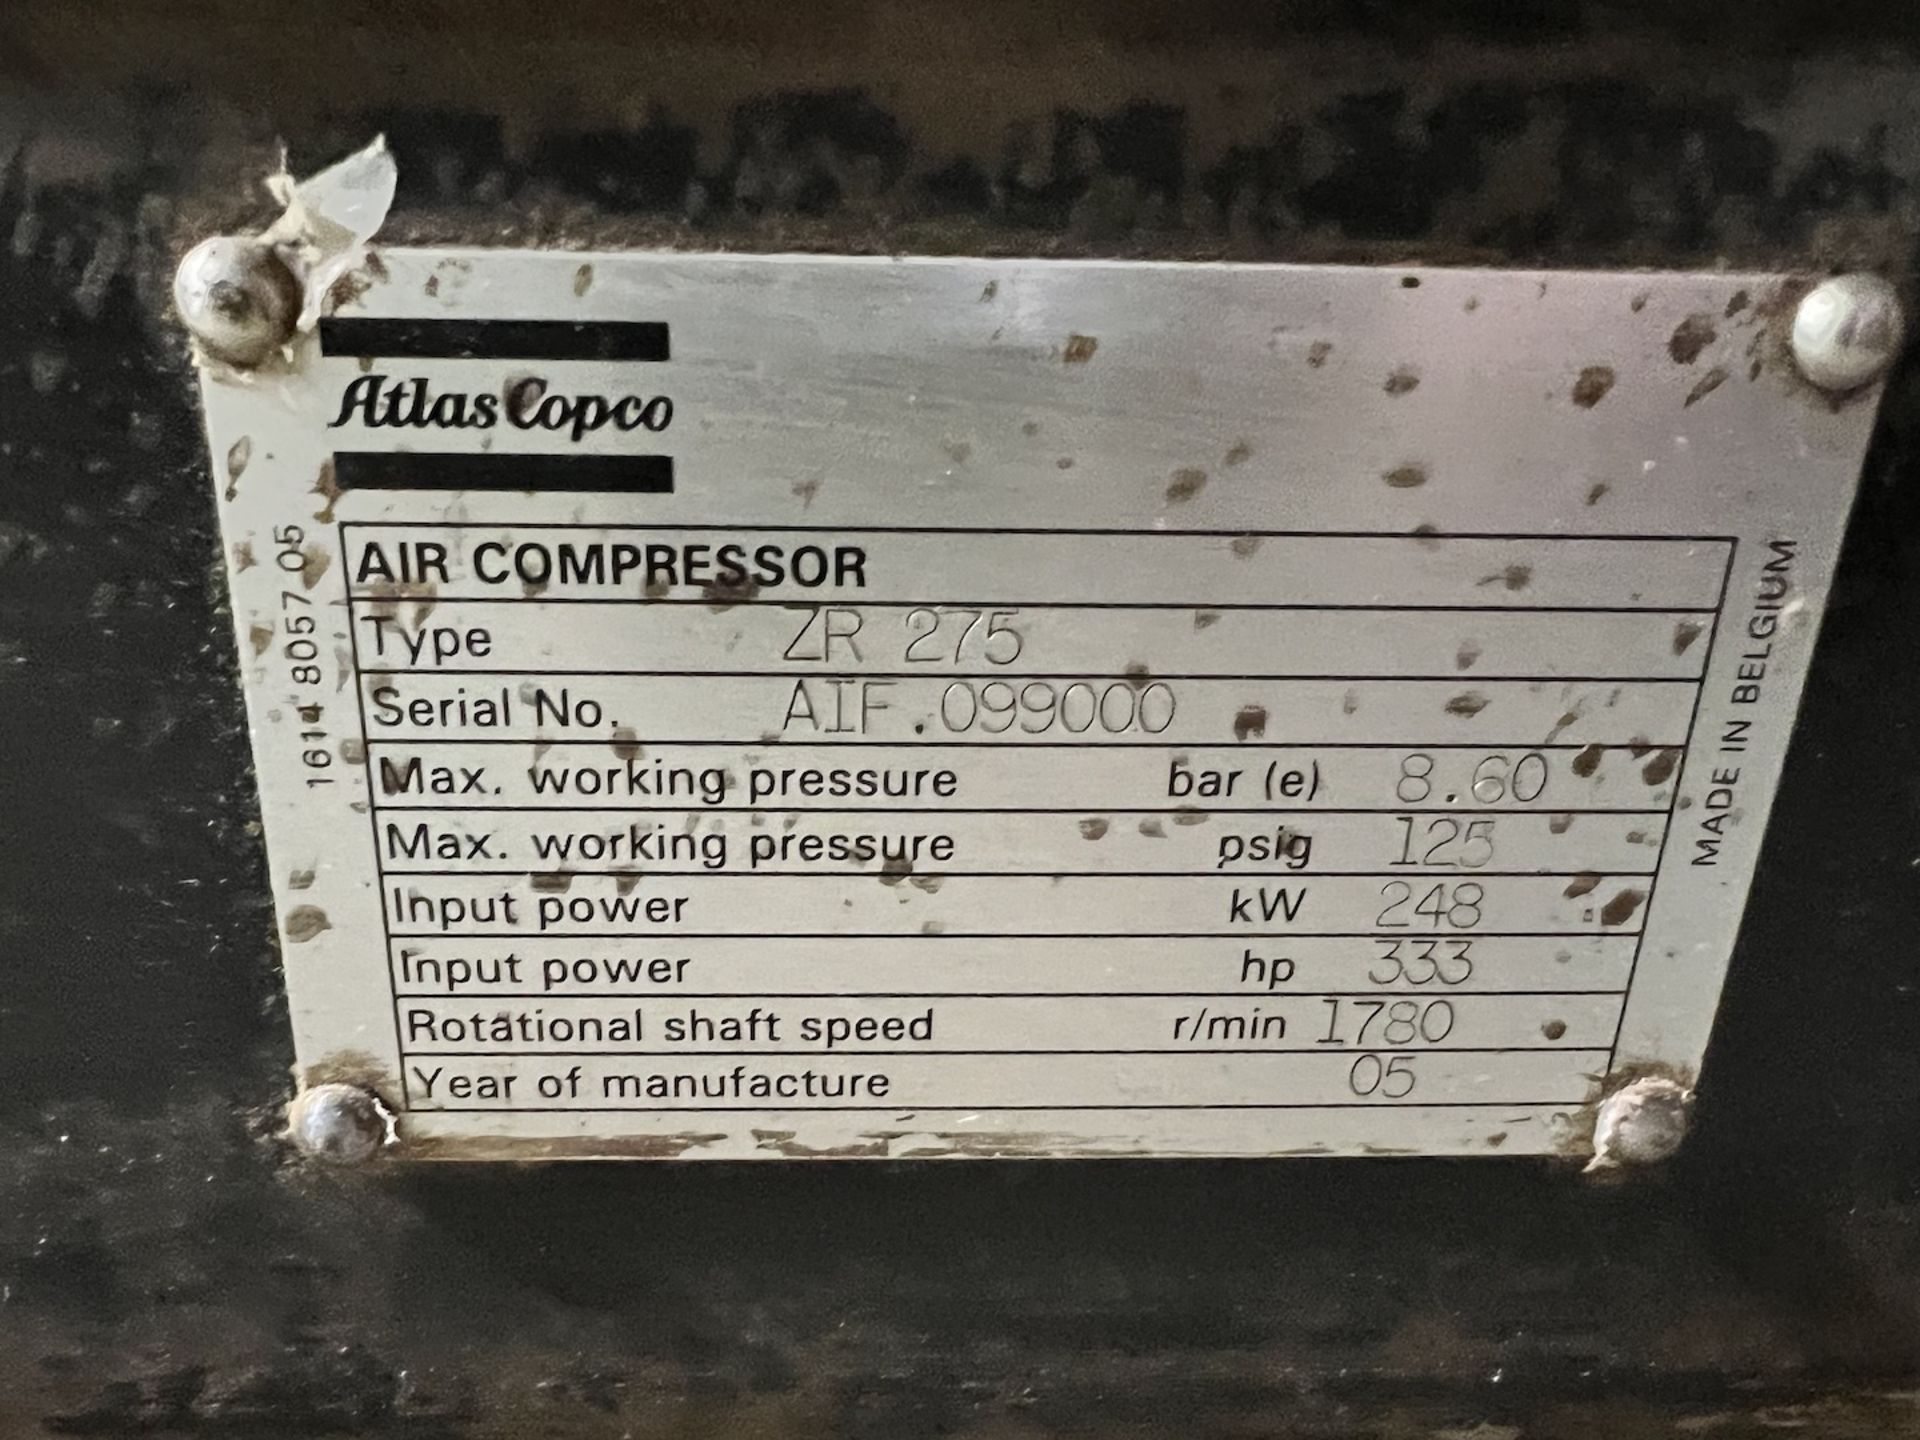 2014 ATLAS COPCO AIR COMPRESSOR, MODEL ZR 275, S/N AIF 099000, 333 HP, 8.6 BAR, 125 PSI - Image 5 of 35